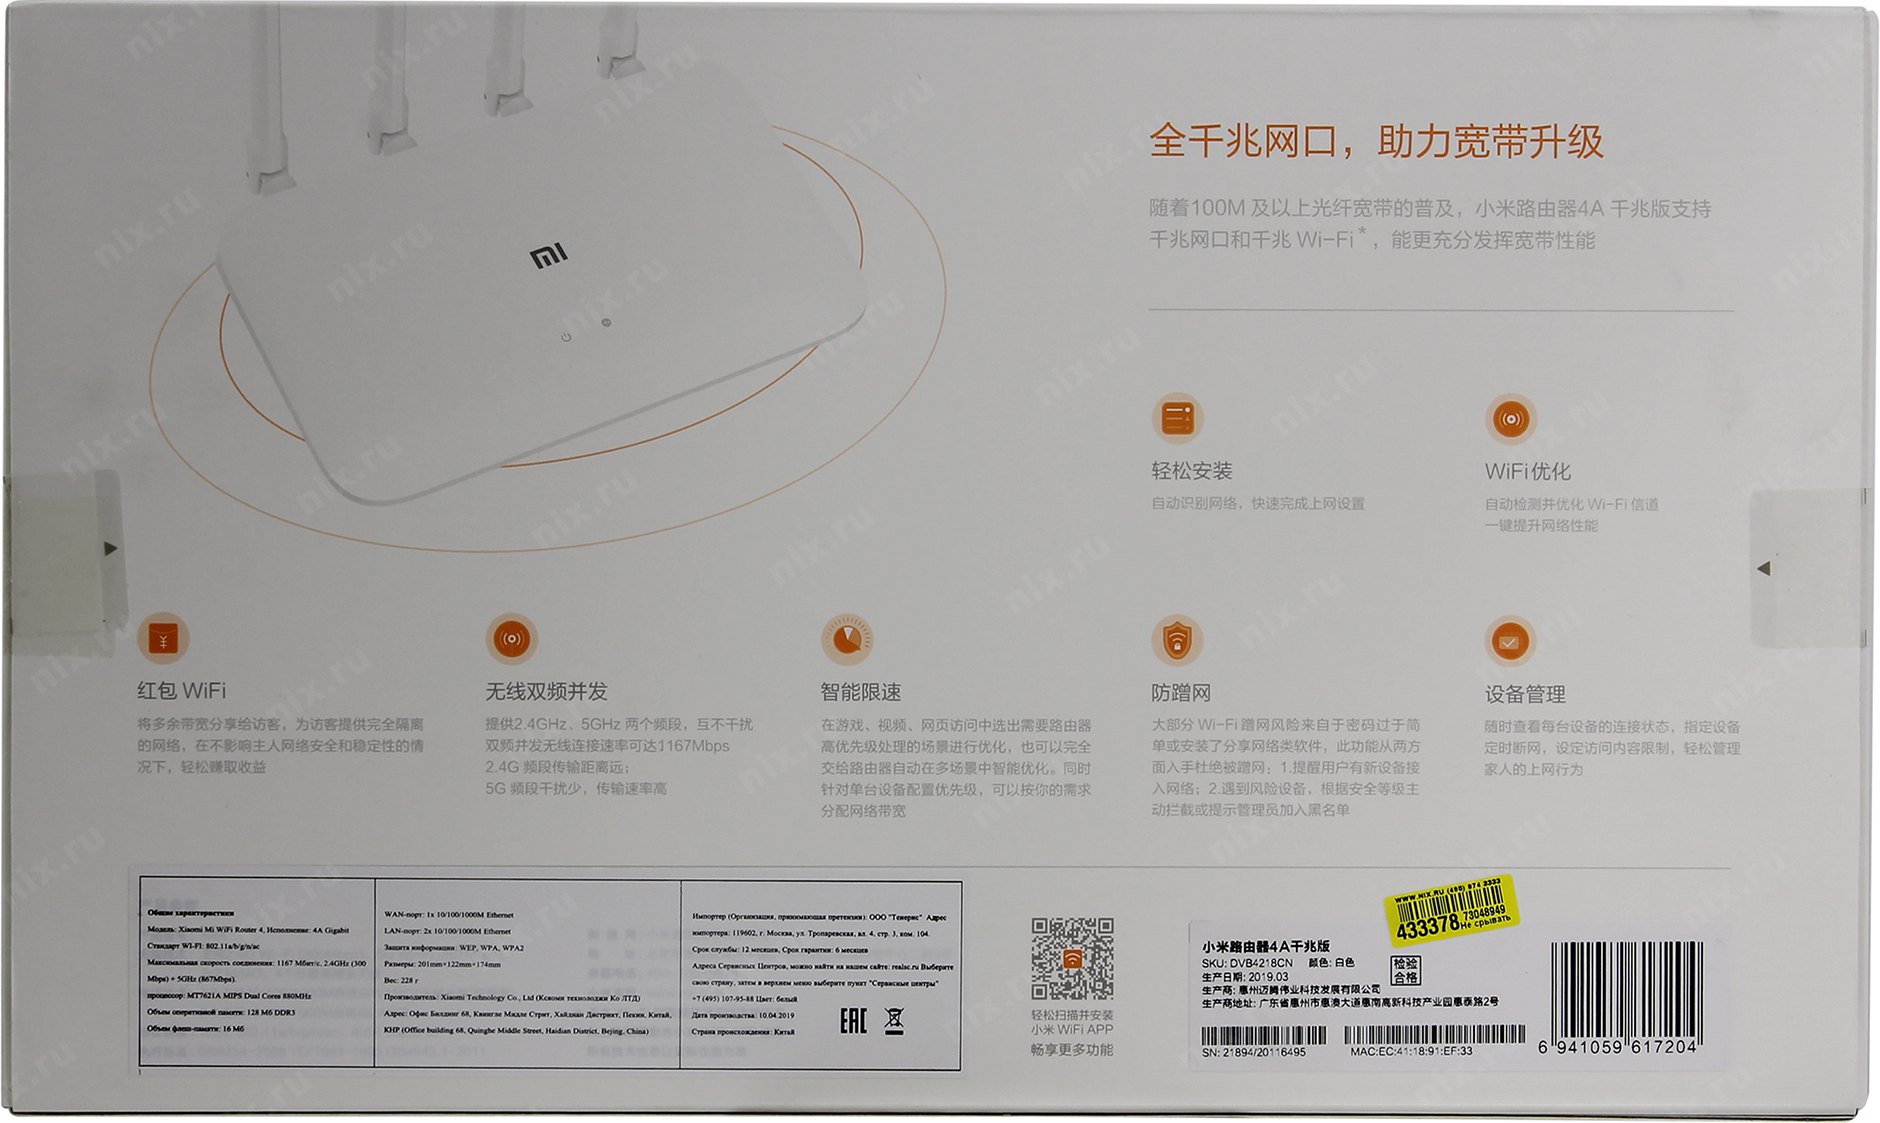 Xiaomi Mi Router 4a Pppoe